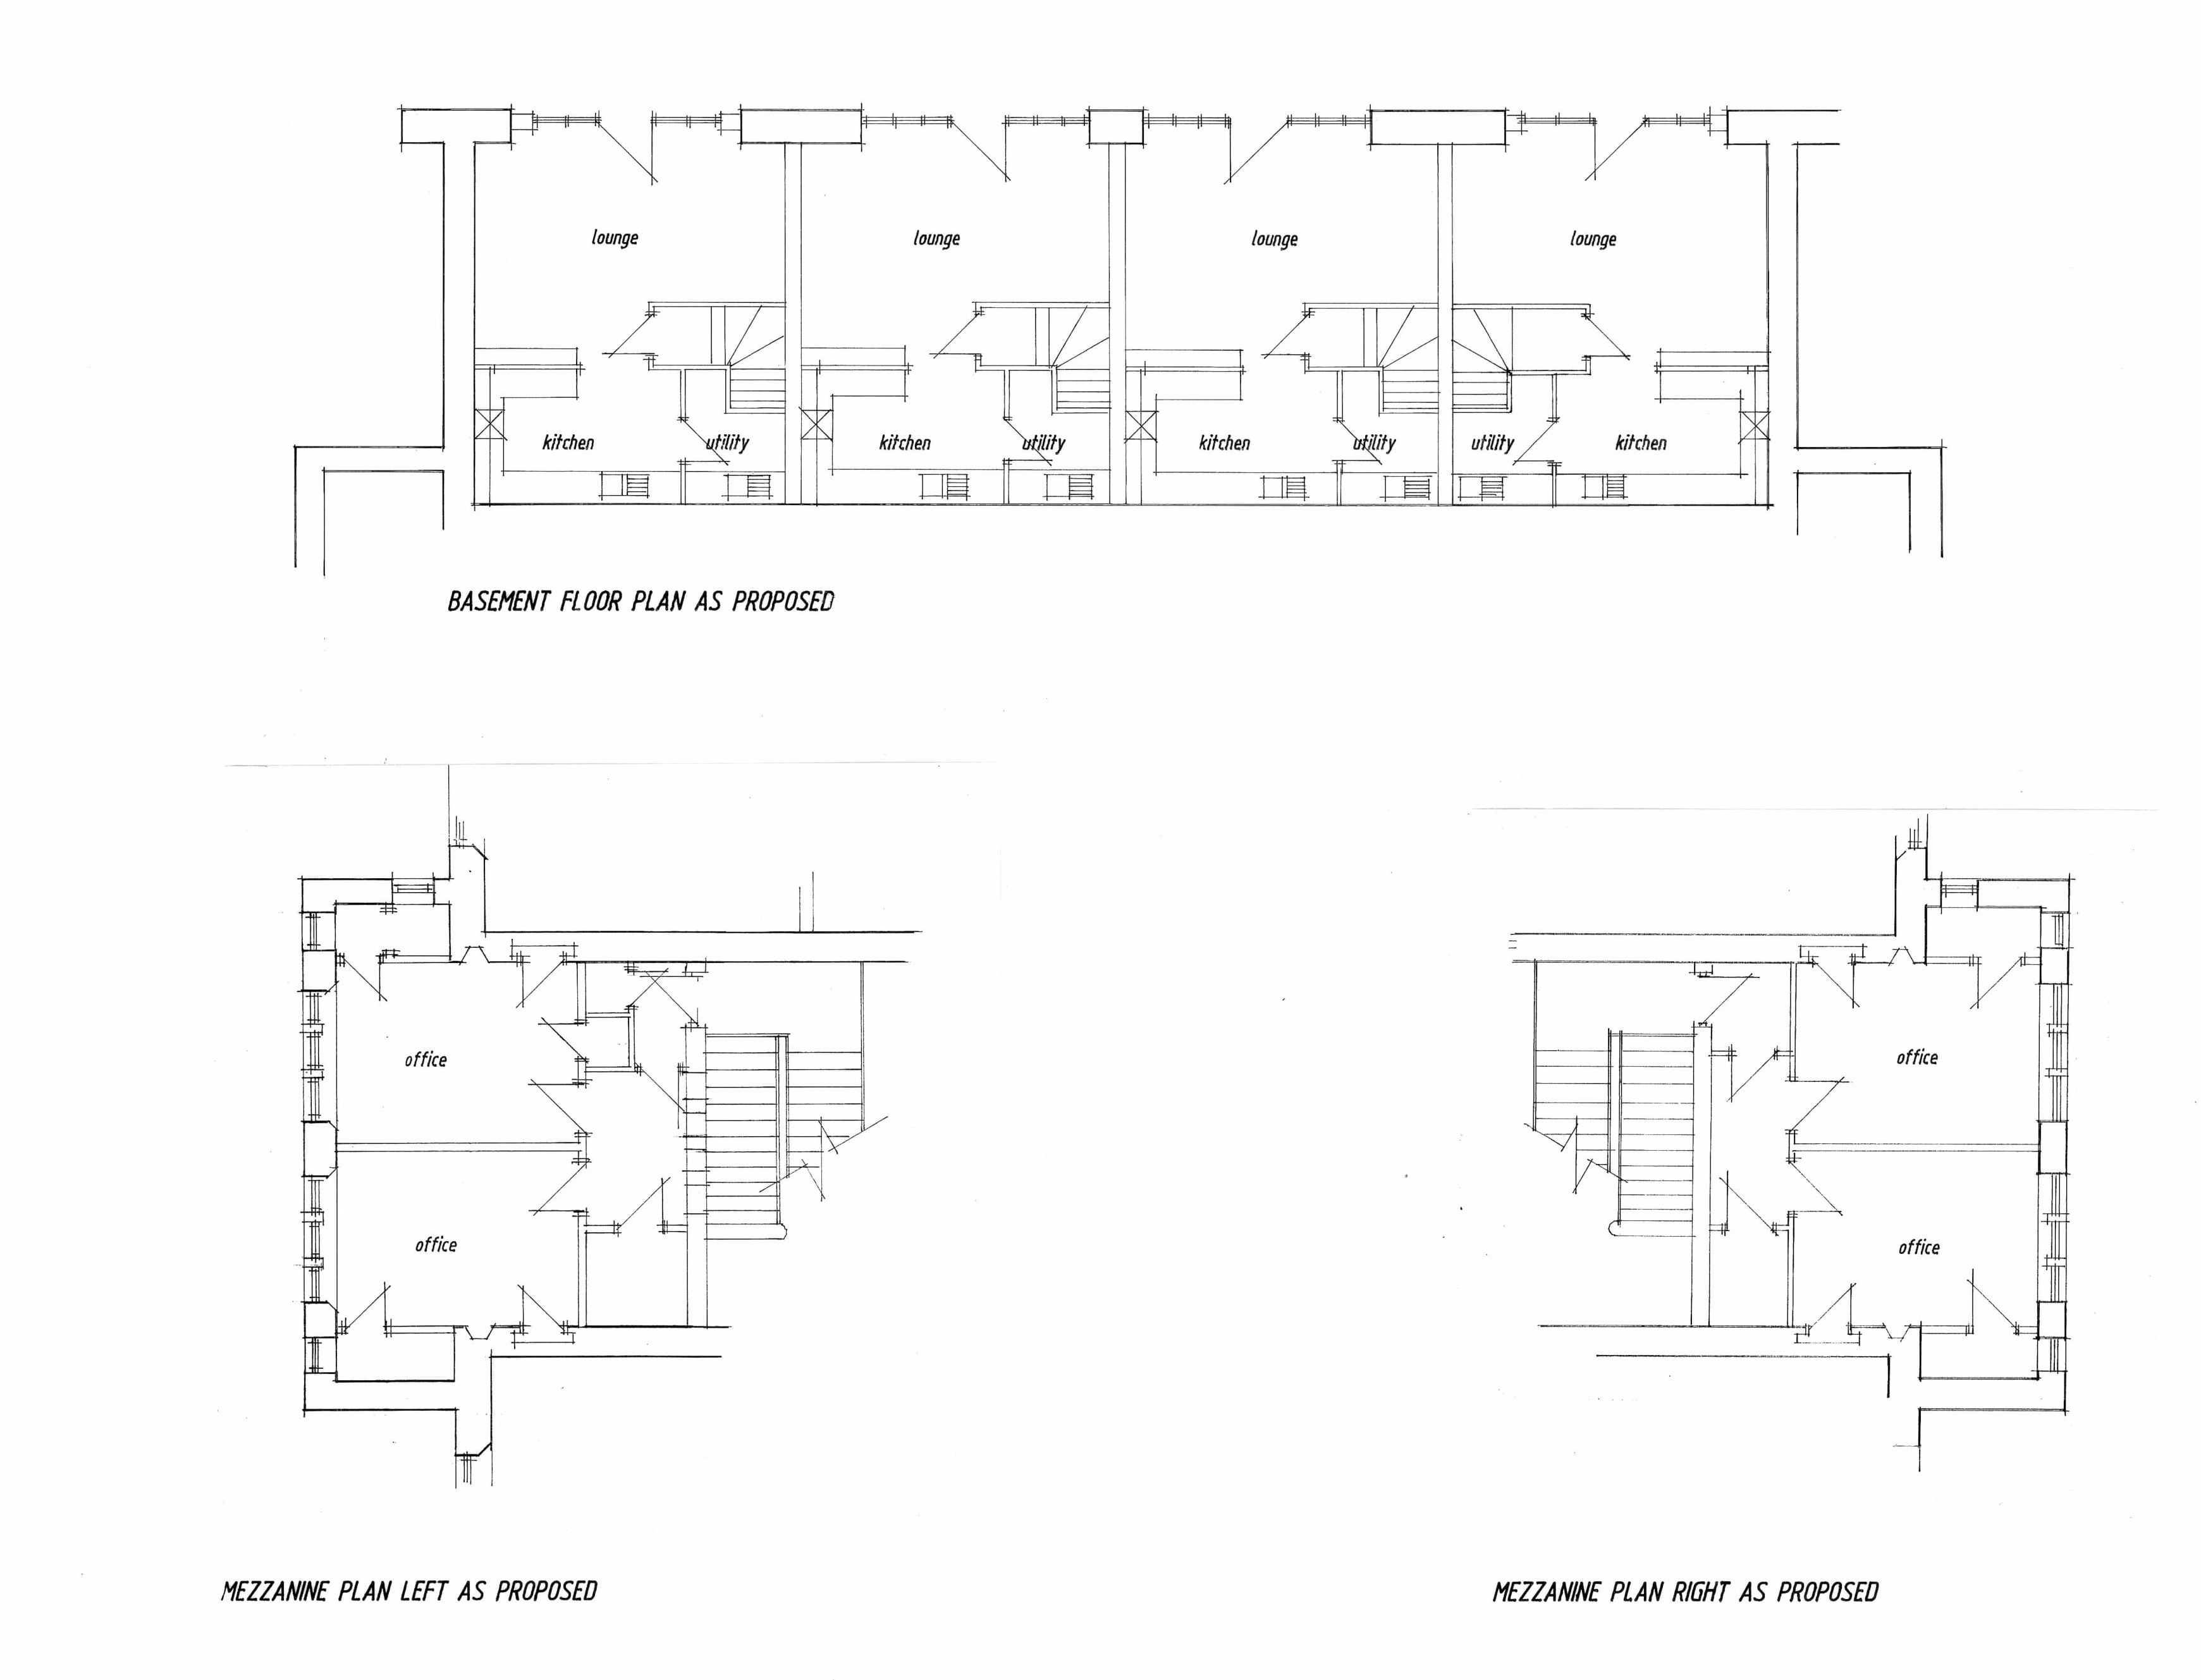 Basement and Mezzanine Floor Plan